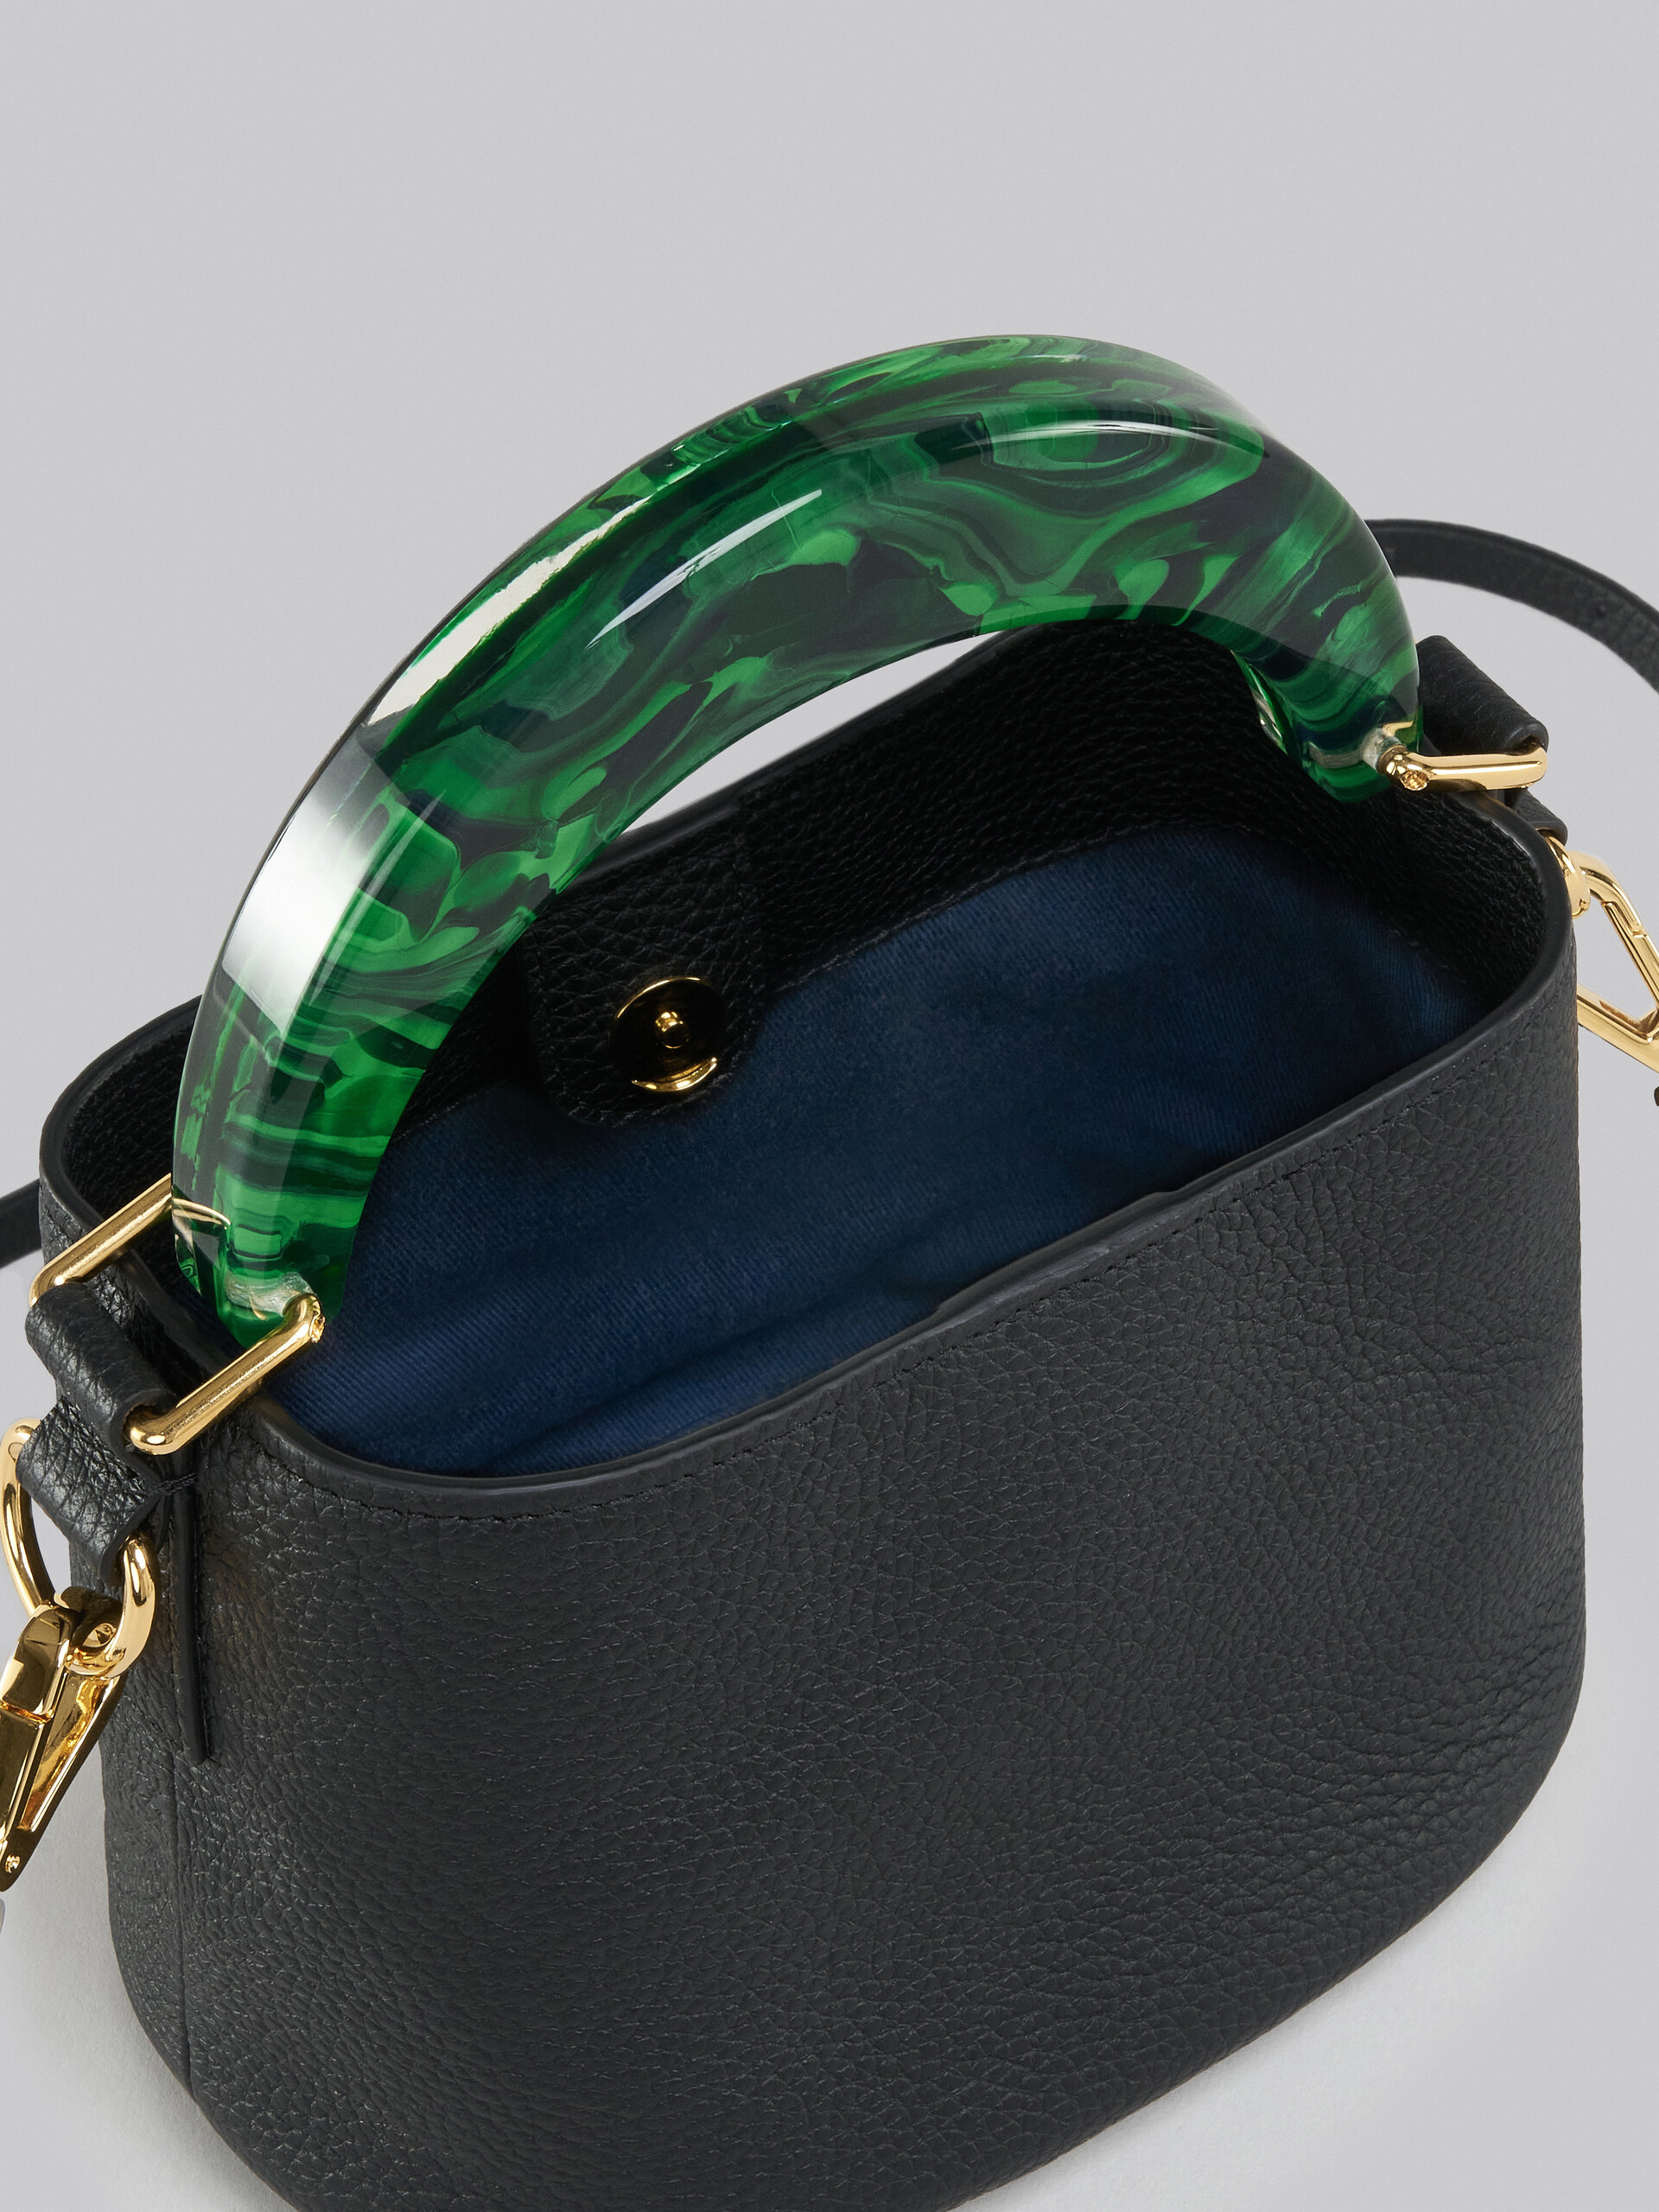 Venice Mini Bucket Bag in black leather - Shoulder Bag - Image 3